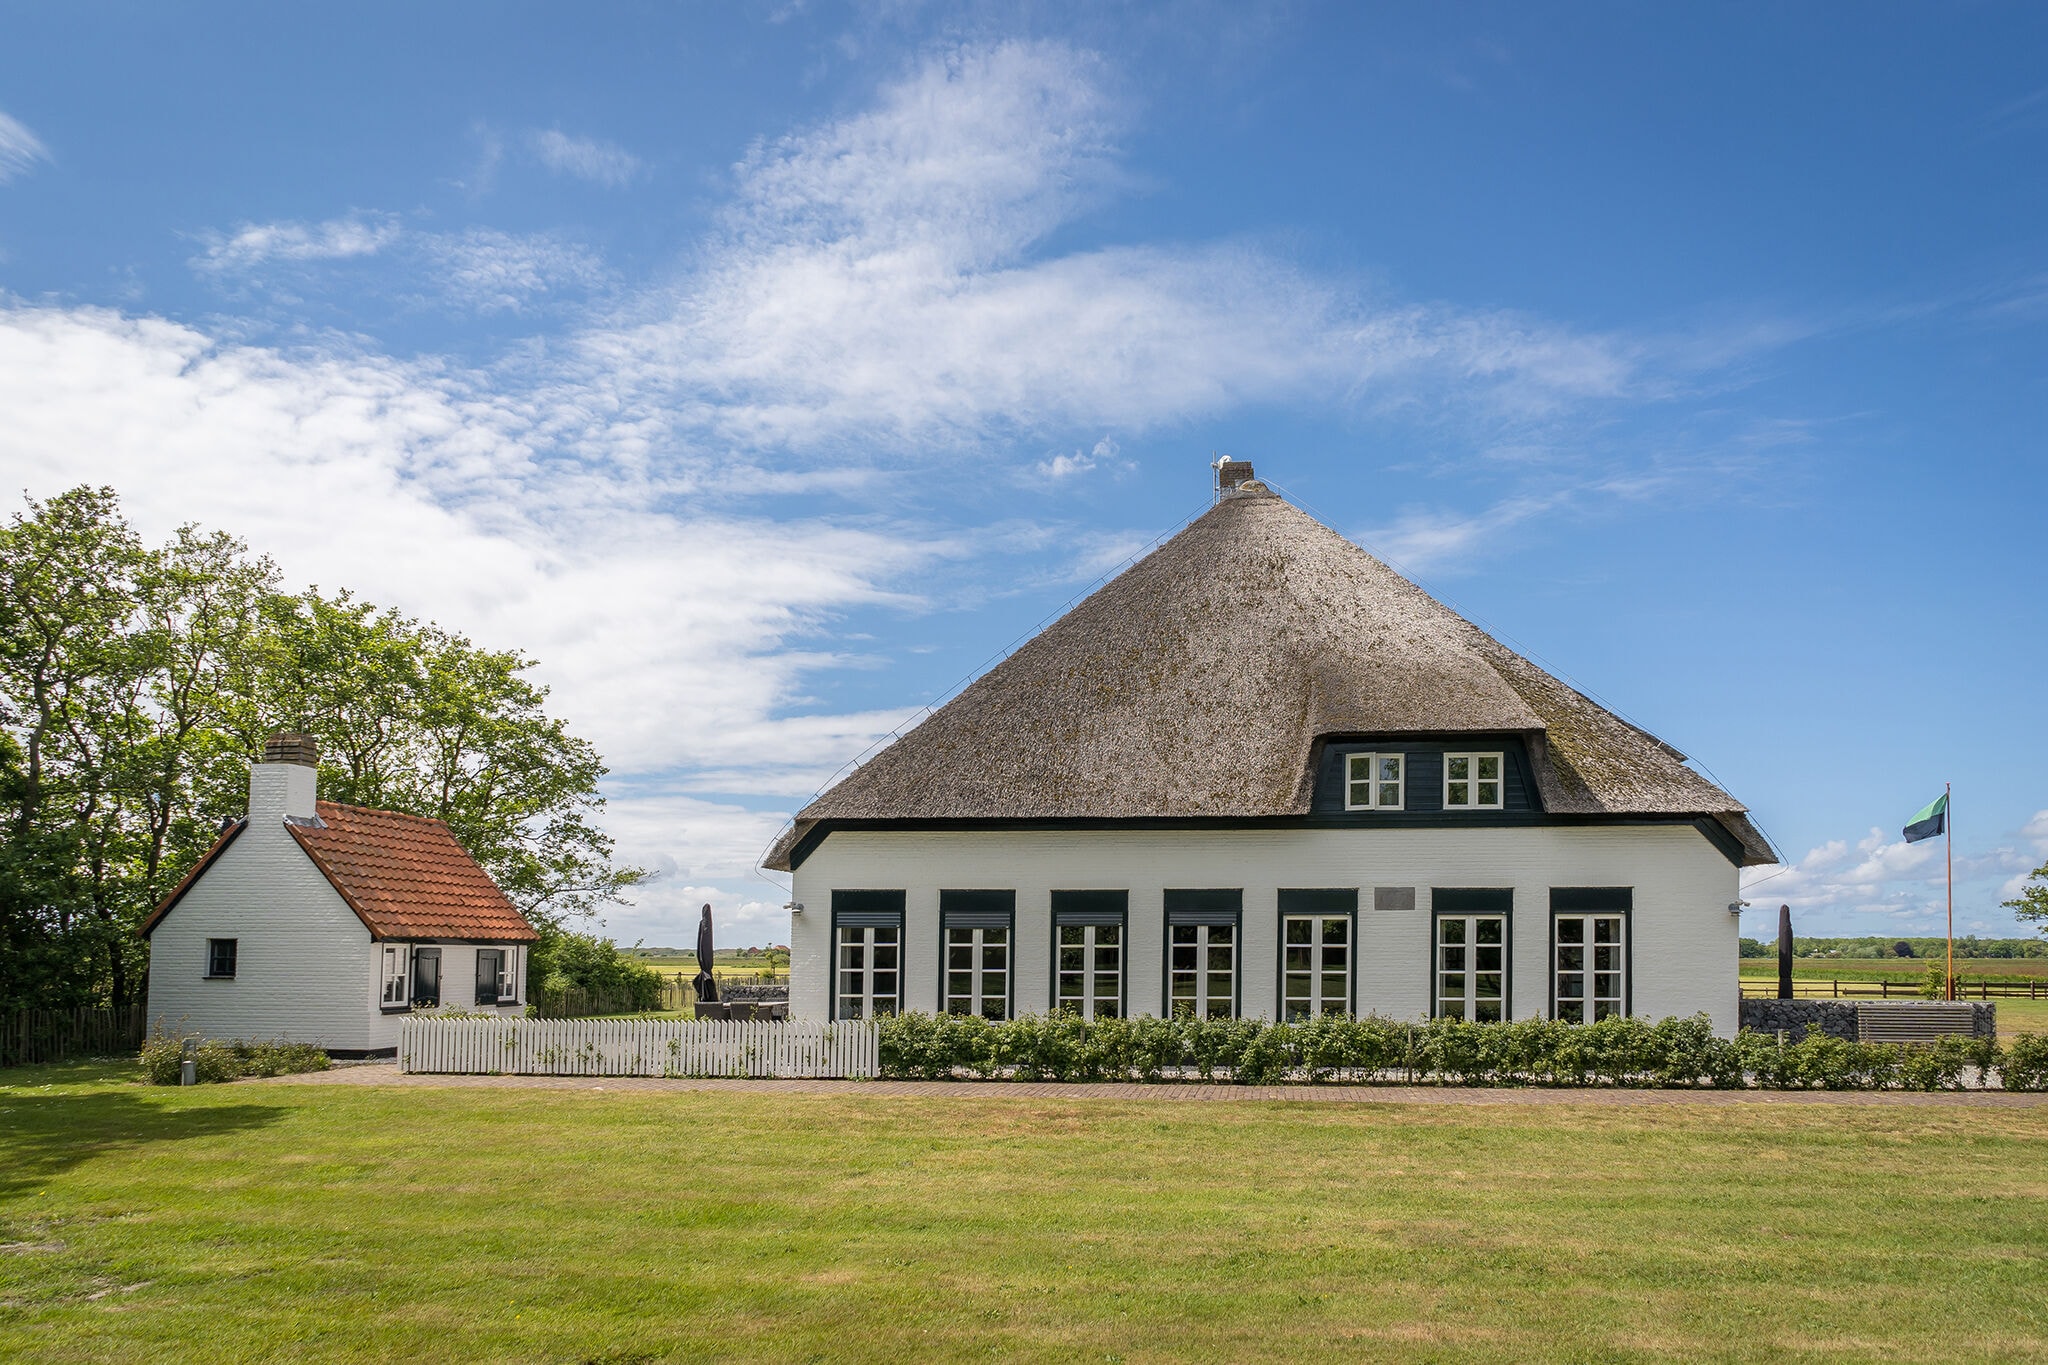 Appartement situé dans une ferme, à De Cocksdorp sur l'île de Texel